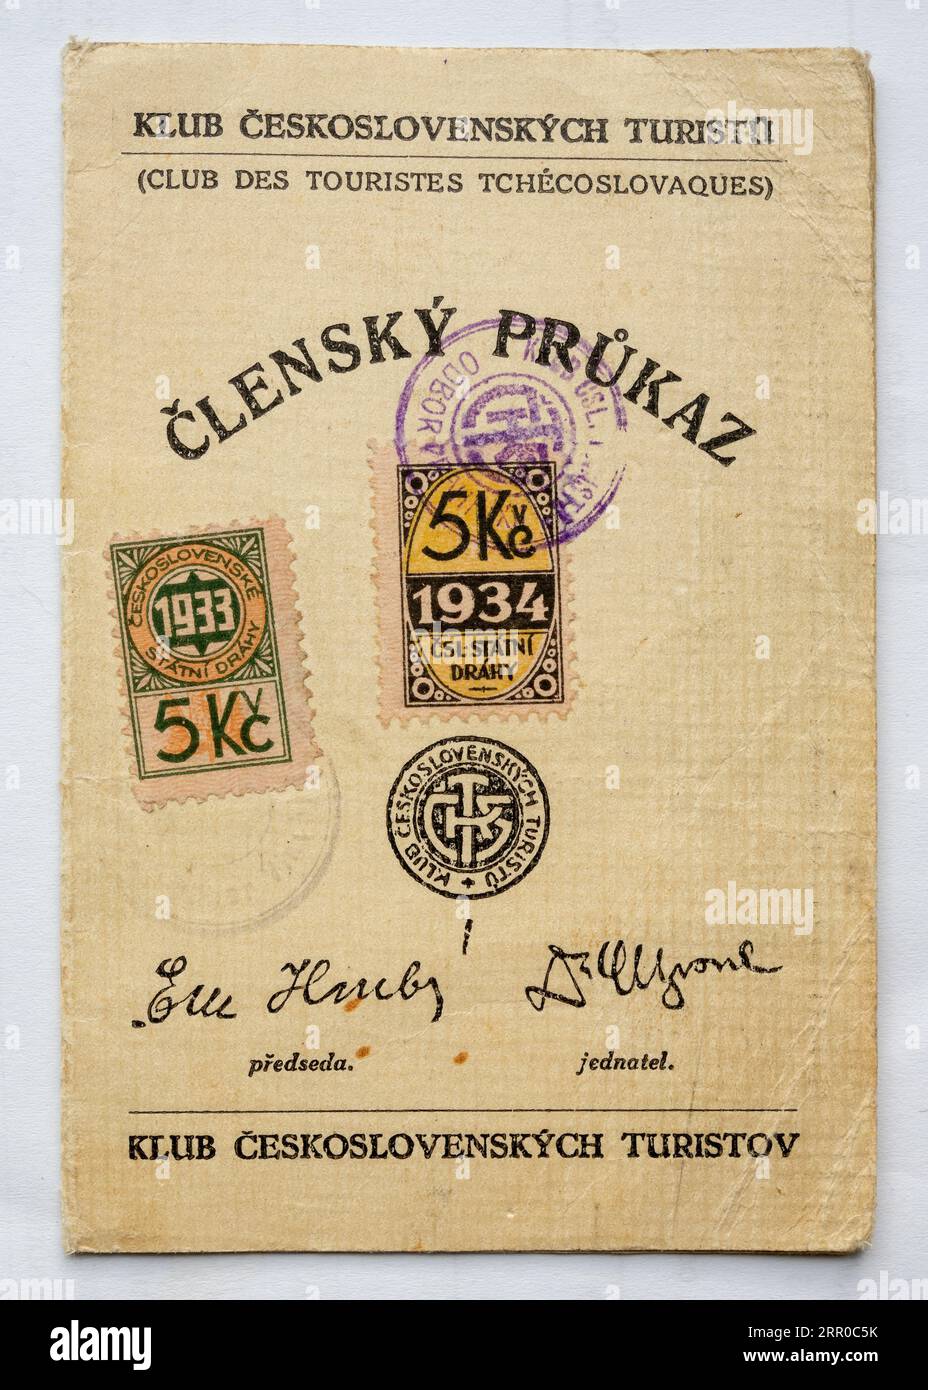 Historische Mitgliedskarte des Tschechoslowakischen Tourismusclubs von 1930, Titelseite mit Gebührenstempel, Vereinslogo und offiziellen Unterschriften. Hintergrund des Whitepapers. Stockfoto